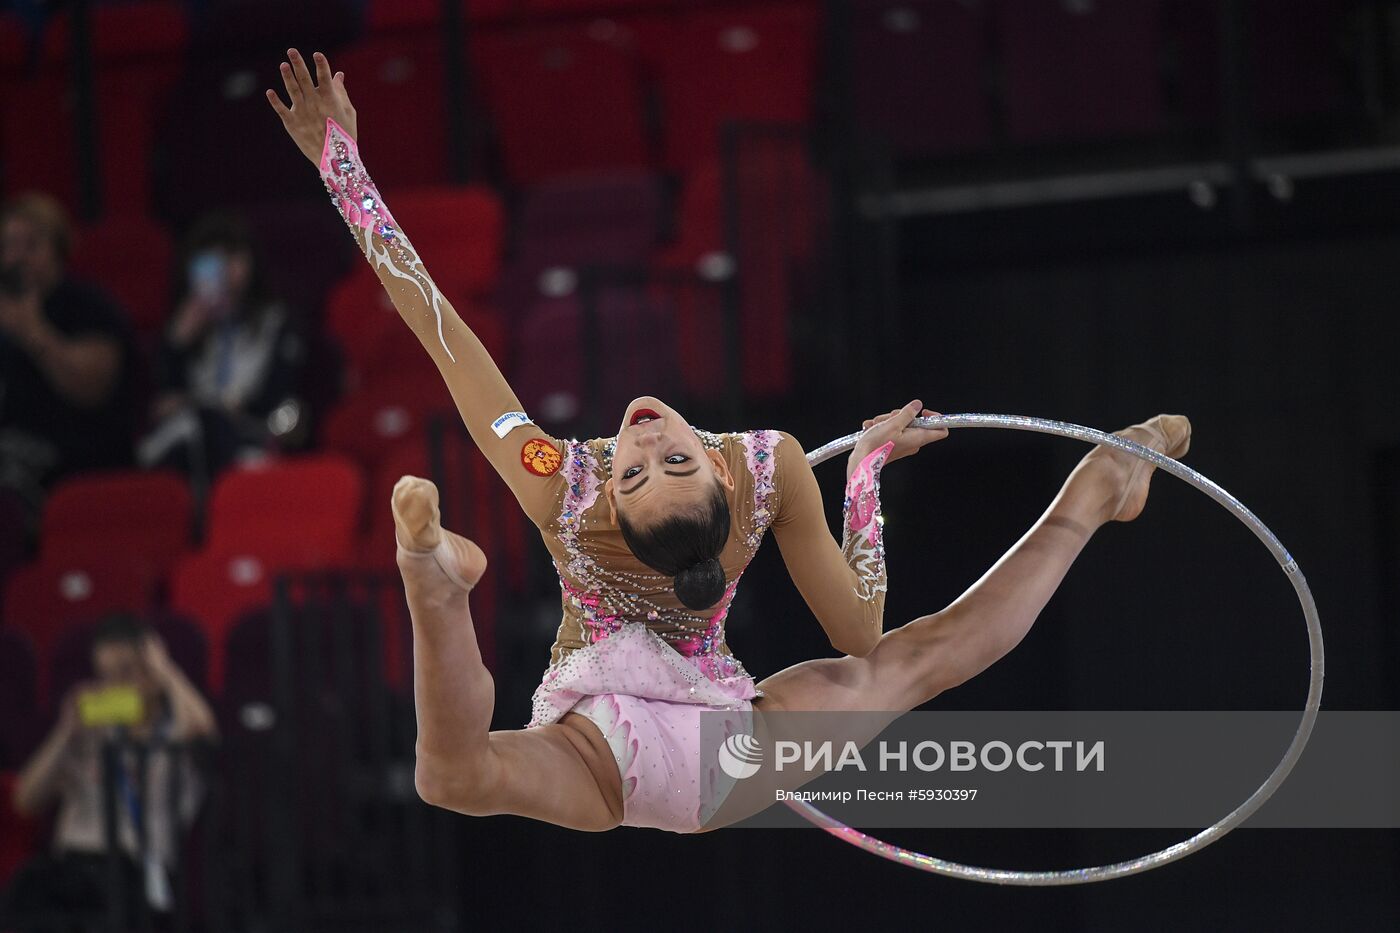 Контрольная тренировка кандидатов в сборную России по художественной гимнастике